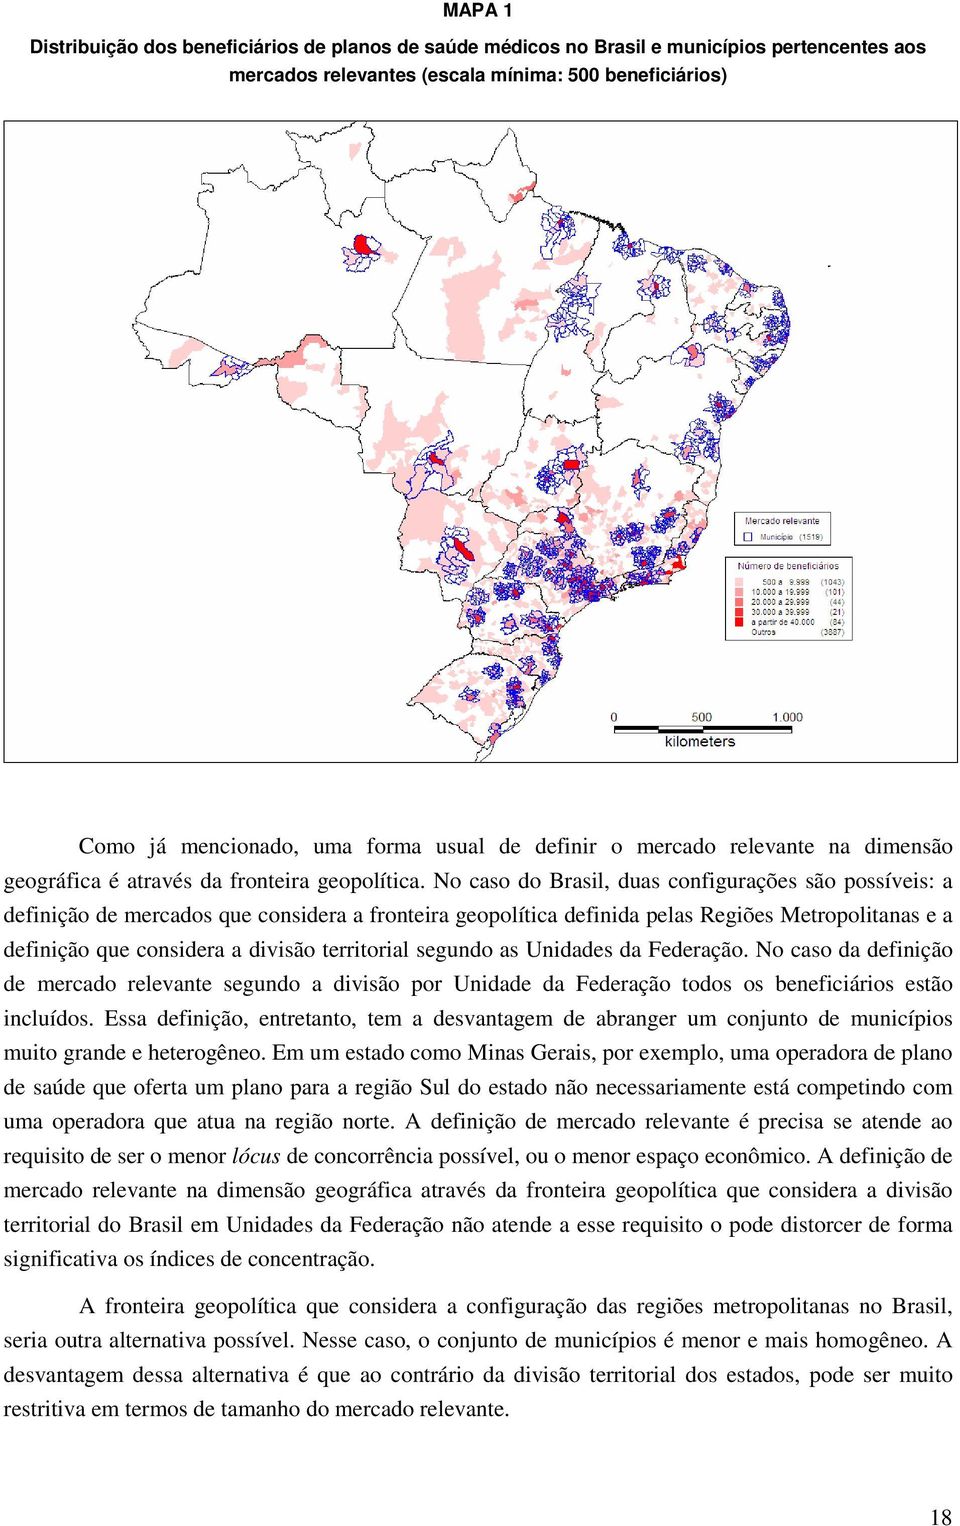 No caso do Brasil, duas configurações são possíveis: a definição de mercados que considera a fronteira geopolítica definida pelas Regiões Metropolitanas e a definição que considera a divisão